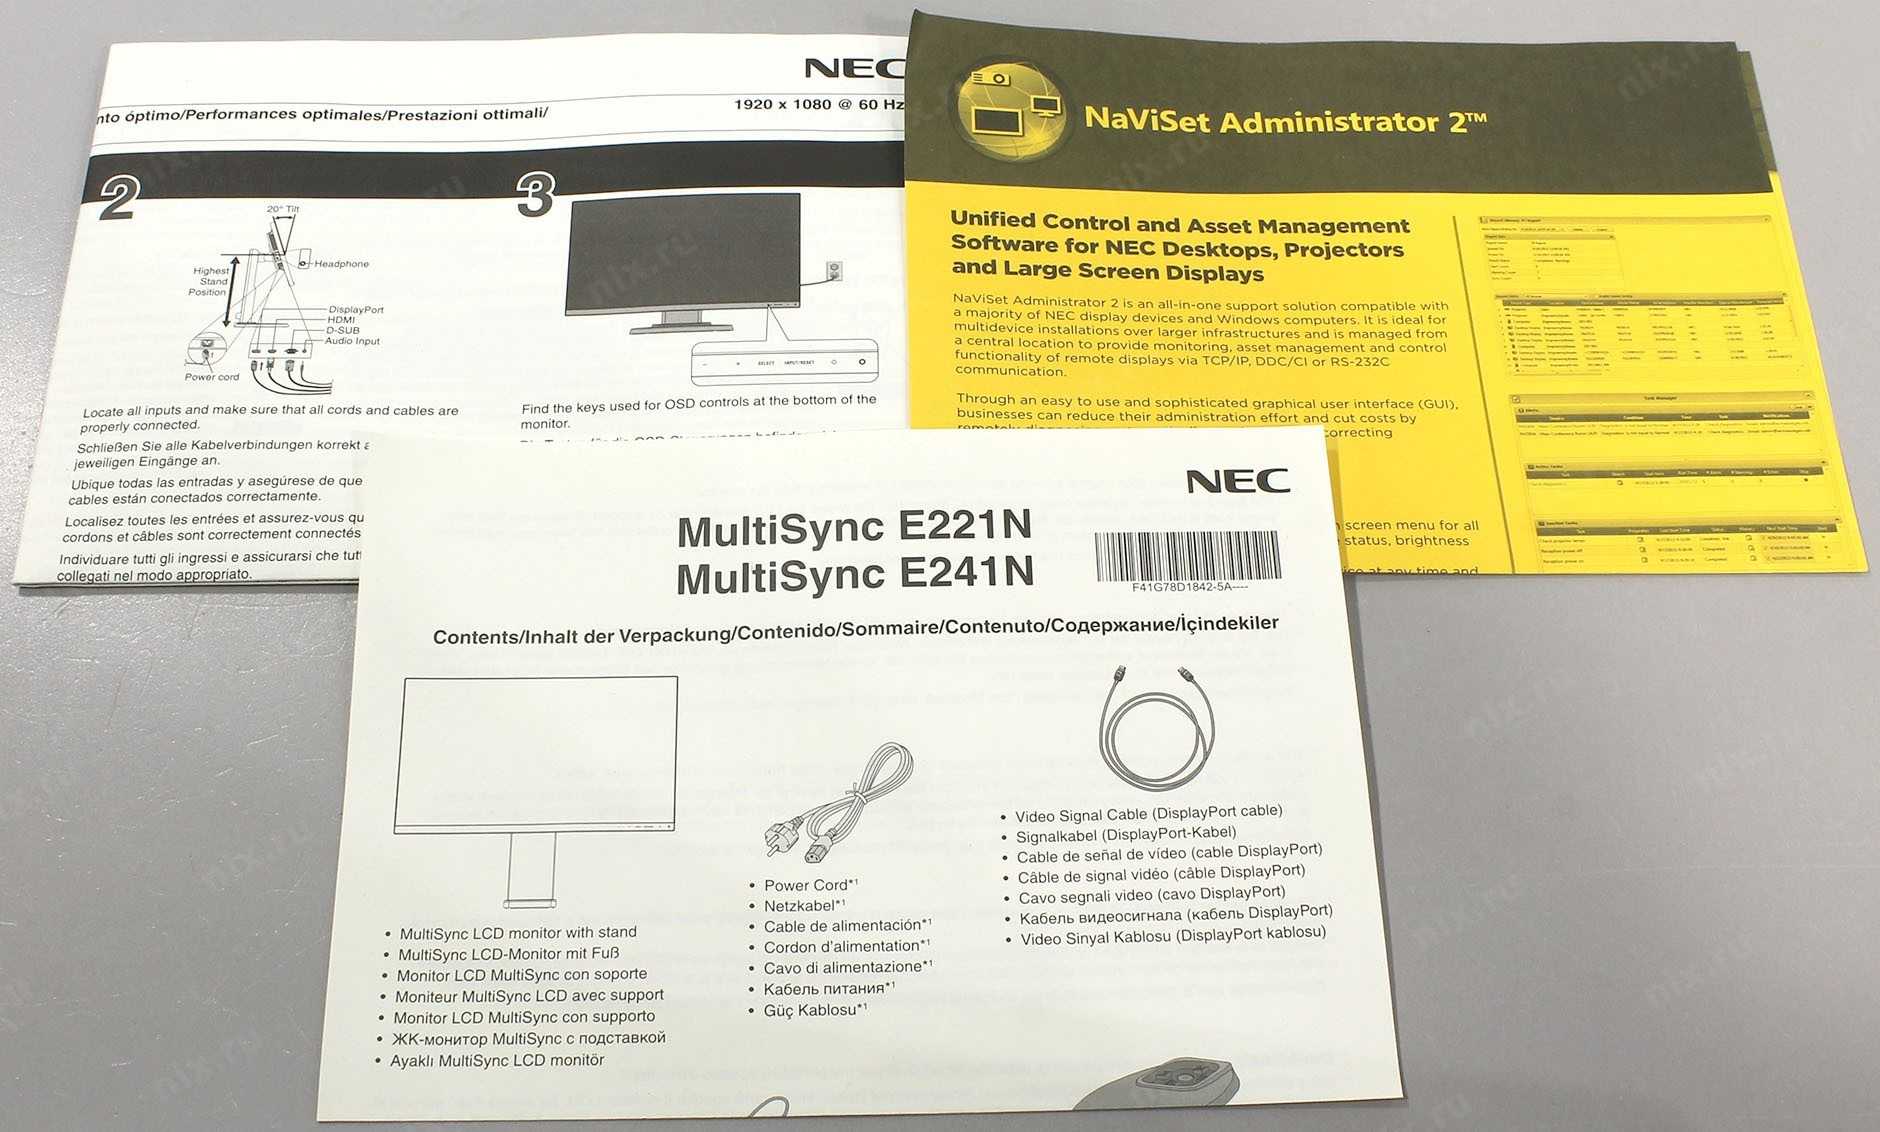 Nec multisync e241n или nec multisync e221n - сравнение мониторов, какой лучше